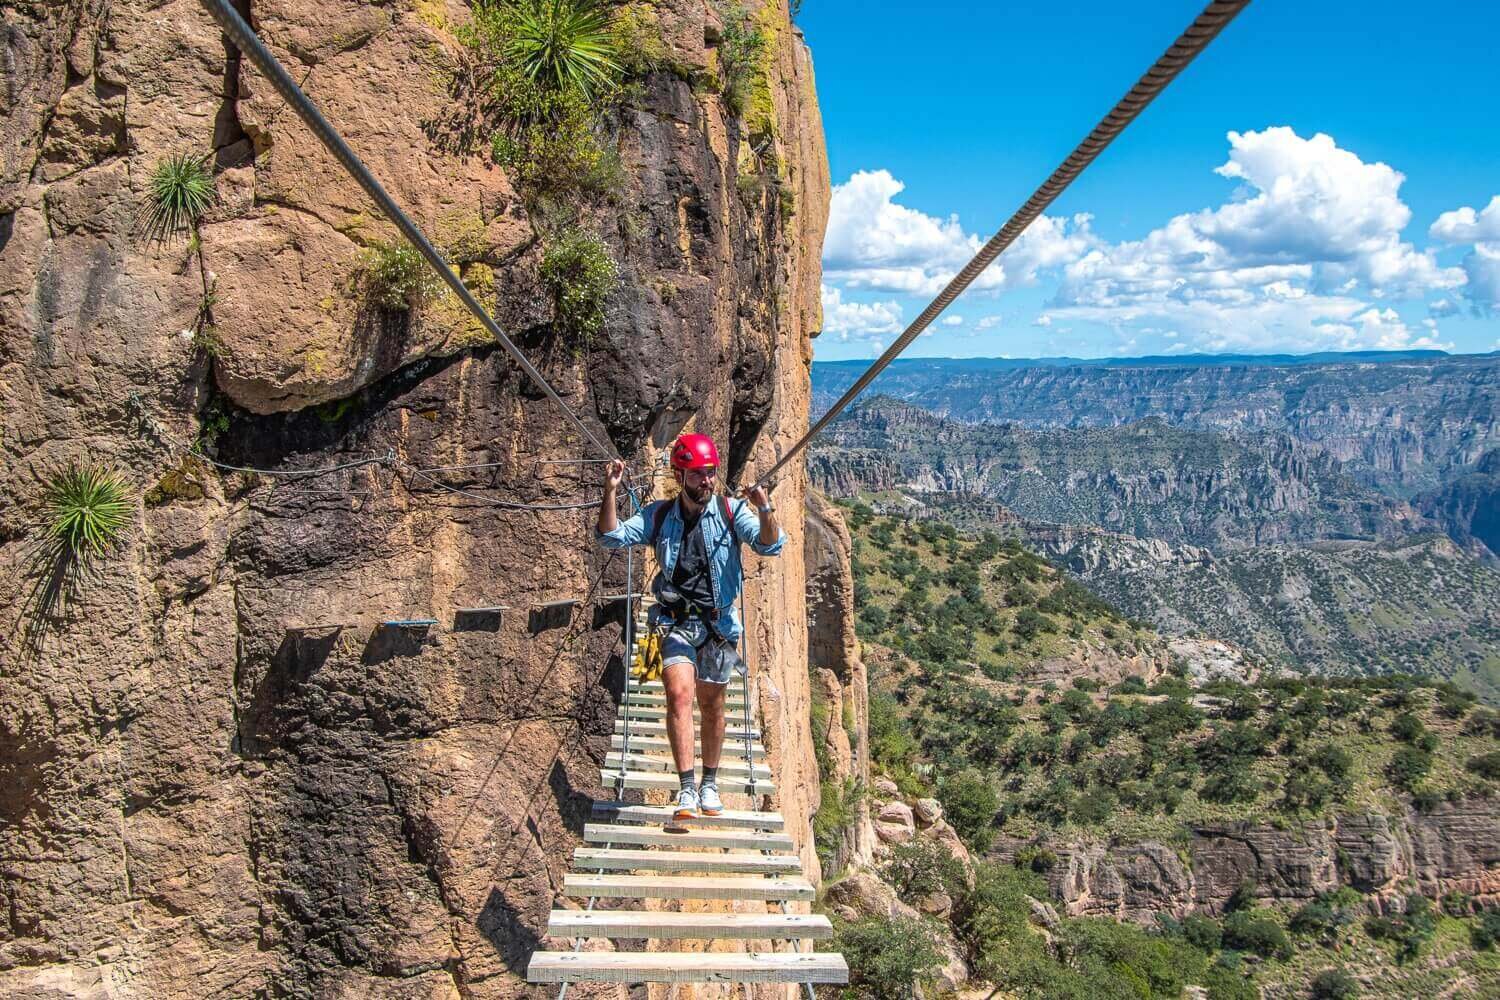 La vía ferrata de Barrancas del Cobre tiene 300 metros de recorrido. Turismo en las barrancas de Chihuahua.